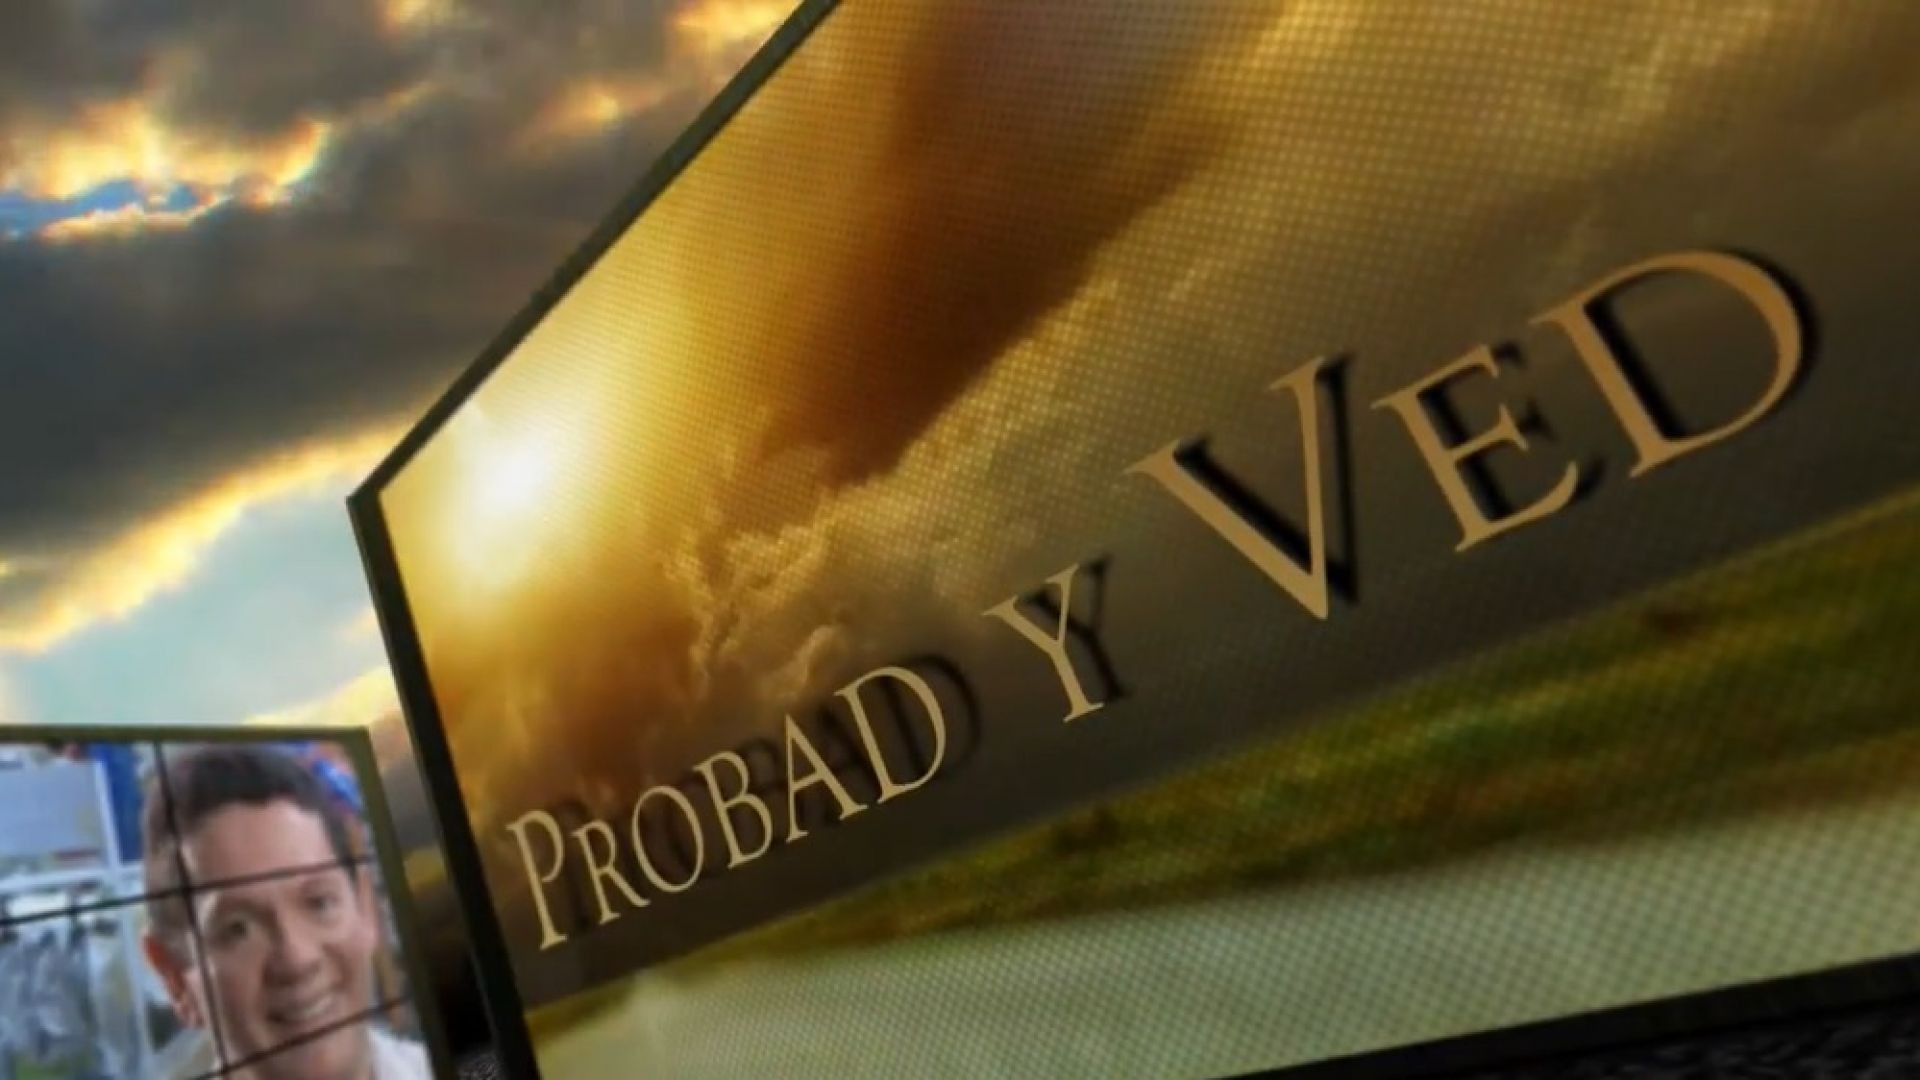 Probad y Ved 2013 - Encuentro com Dios - 23/Nov